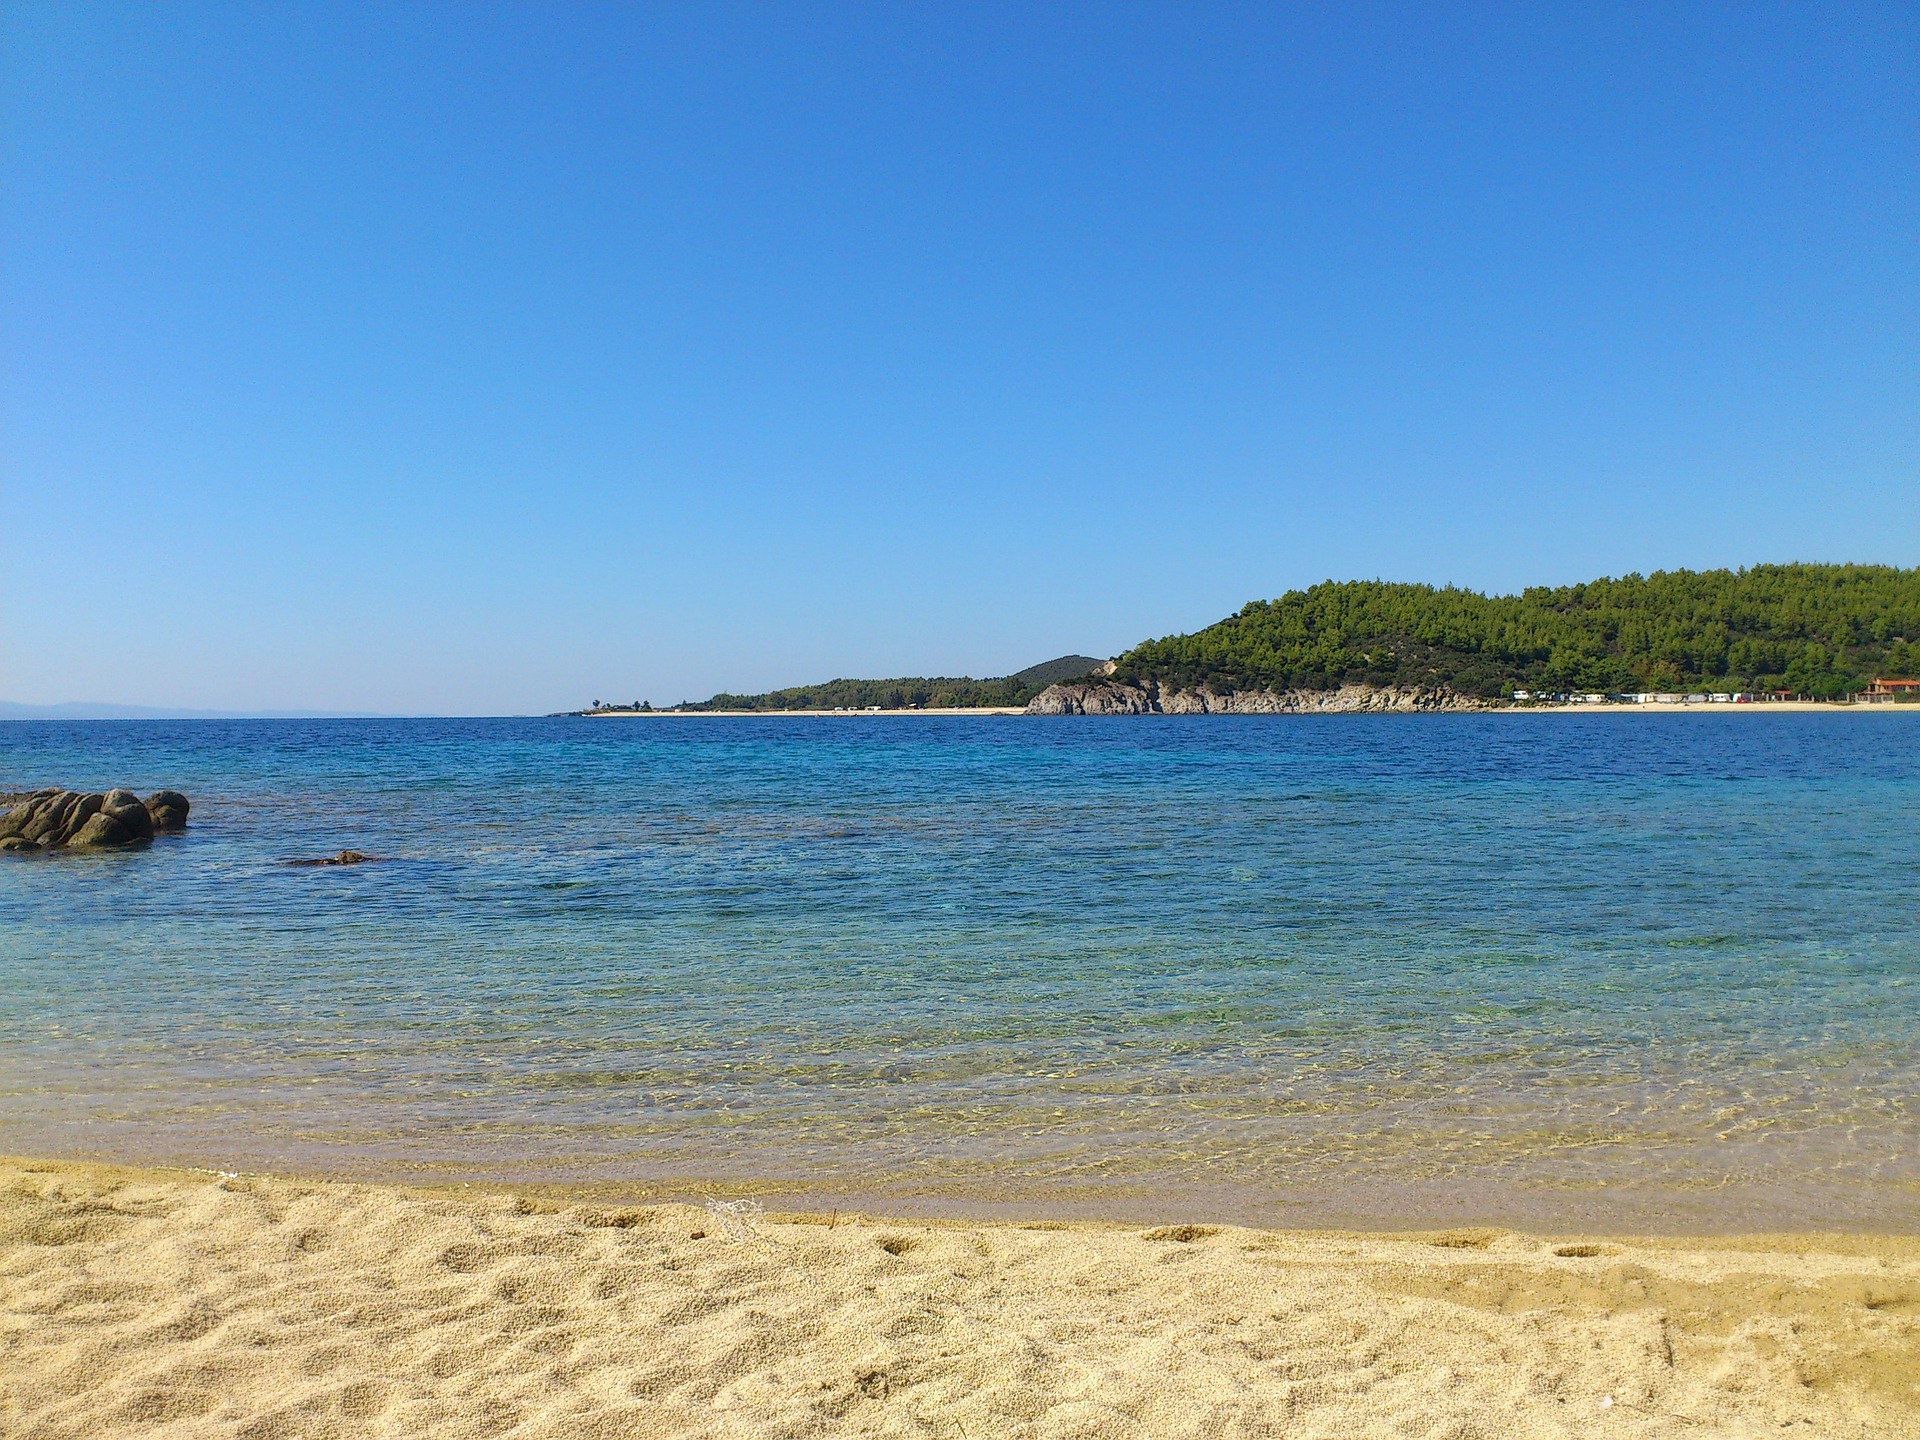 Les meilleures plages de Halkidiki - Les meilleures plages de Halkidiki